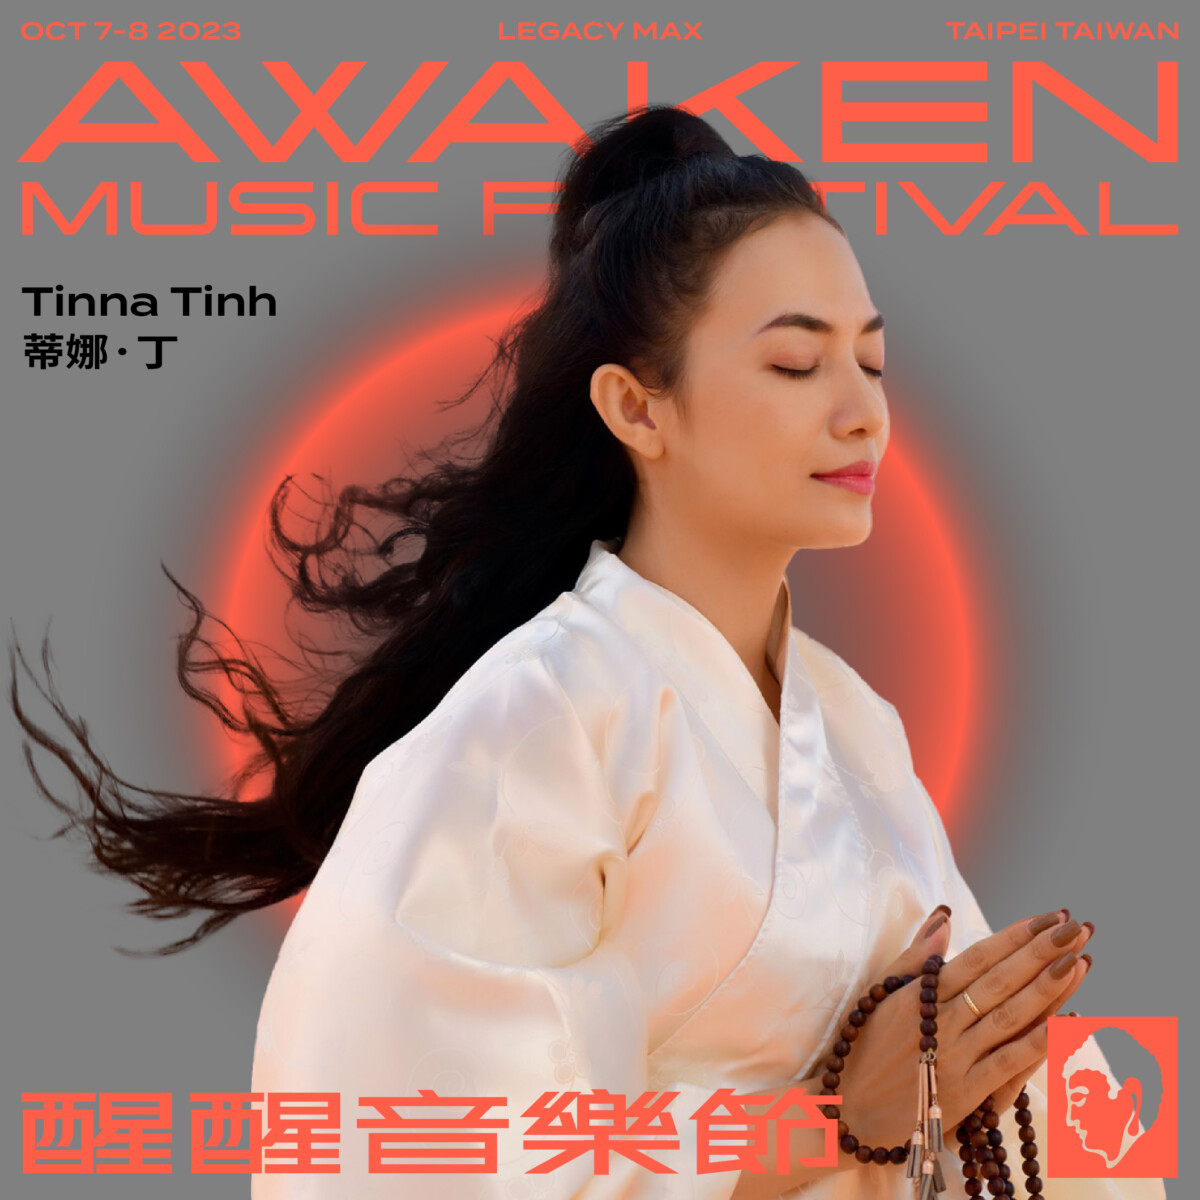 全球首創佛教主題電音派對Awaken Music Festival「醒醒音樂節」 @去旅行新聞網